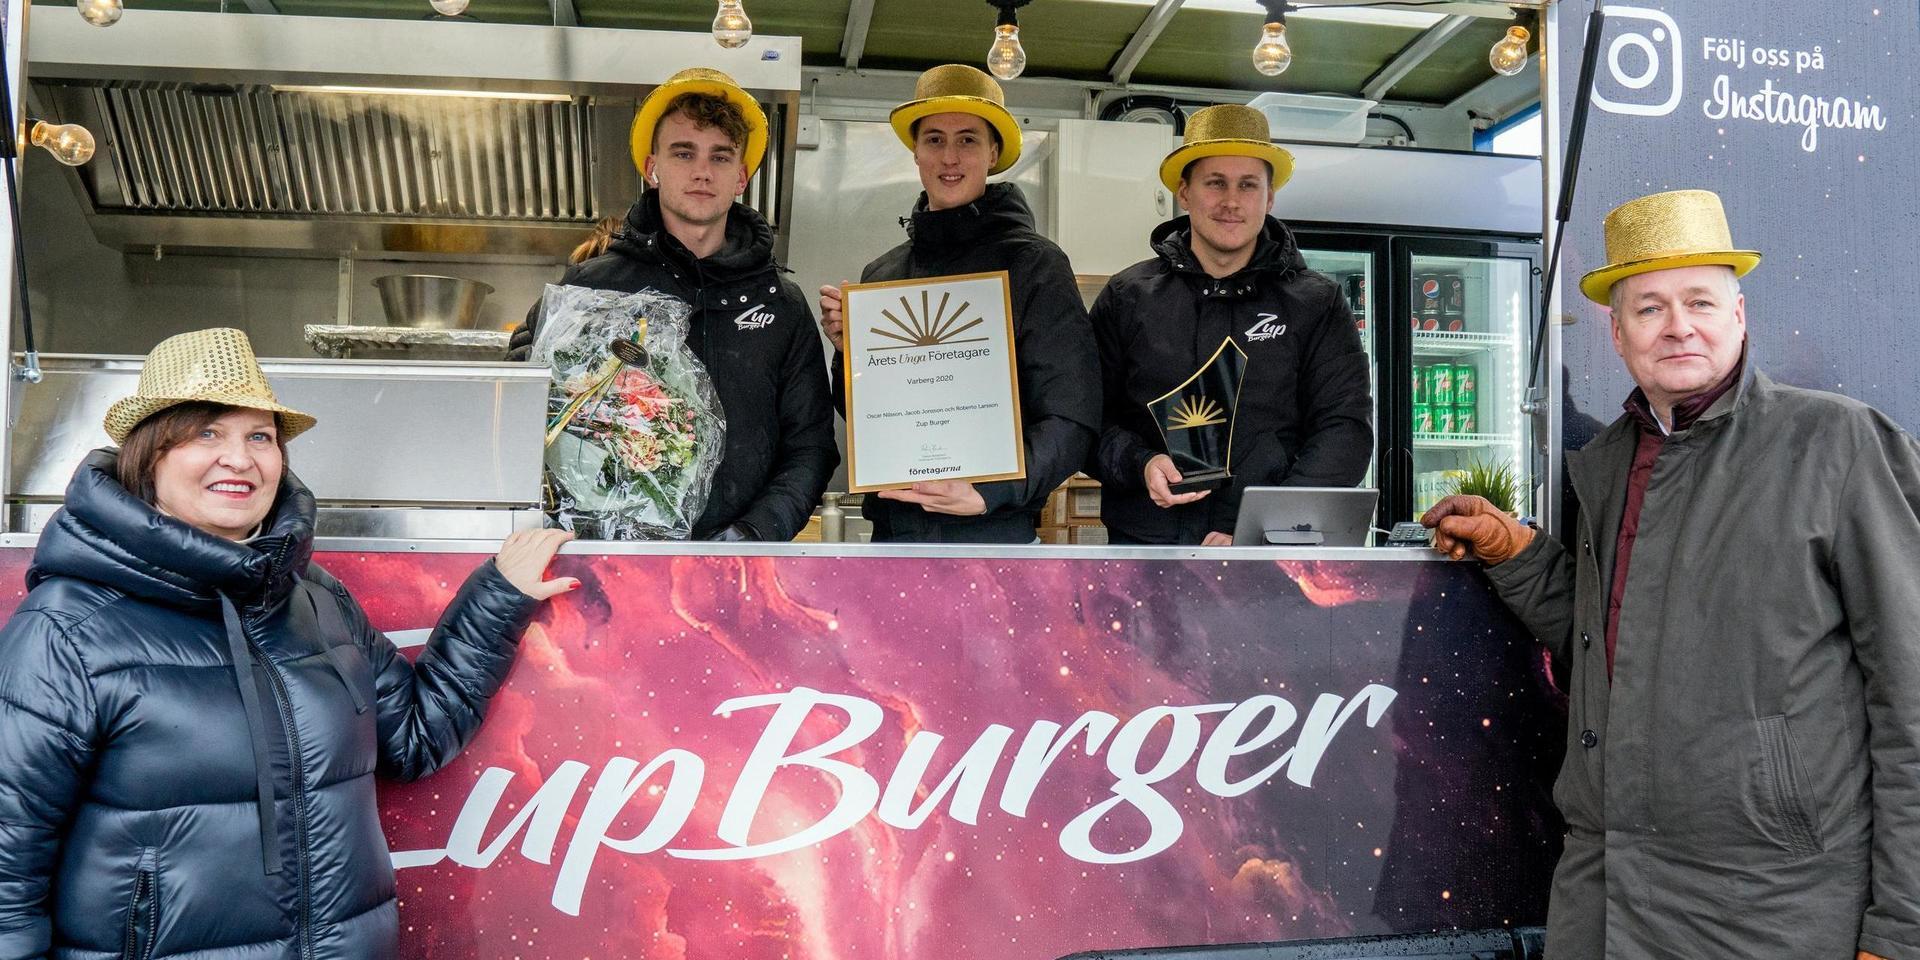 Zup Burger är Årets unga företagare. Jacob Johnson, Roberto Larsson och Oscar Nilsson får priset av Louise Lejestrand från Företagarna och Bo Liljegren, vd för Varbergs sparbank.